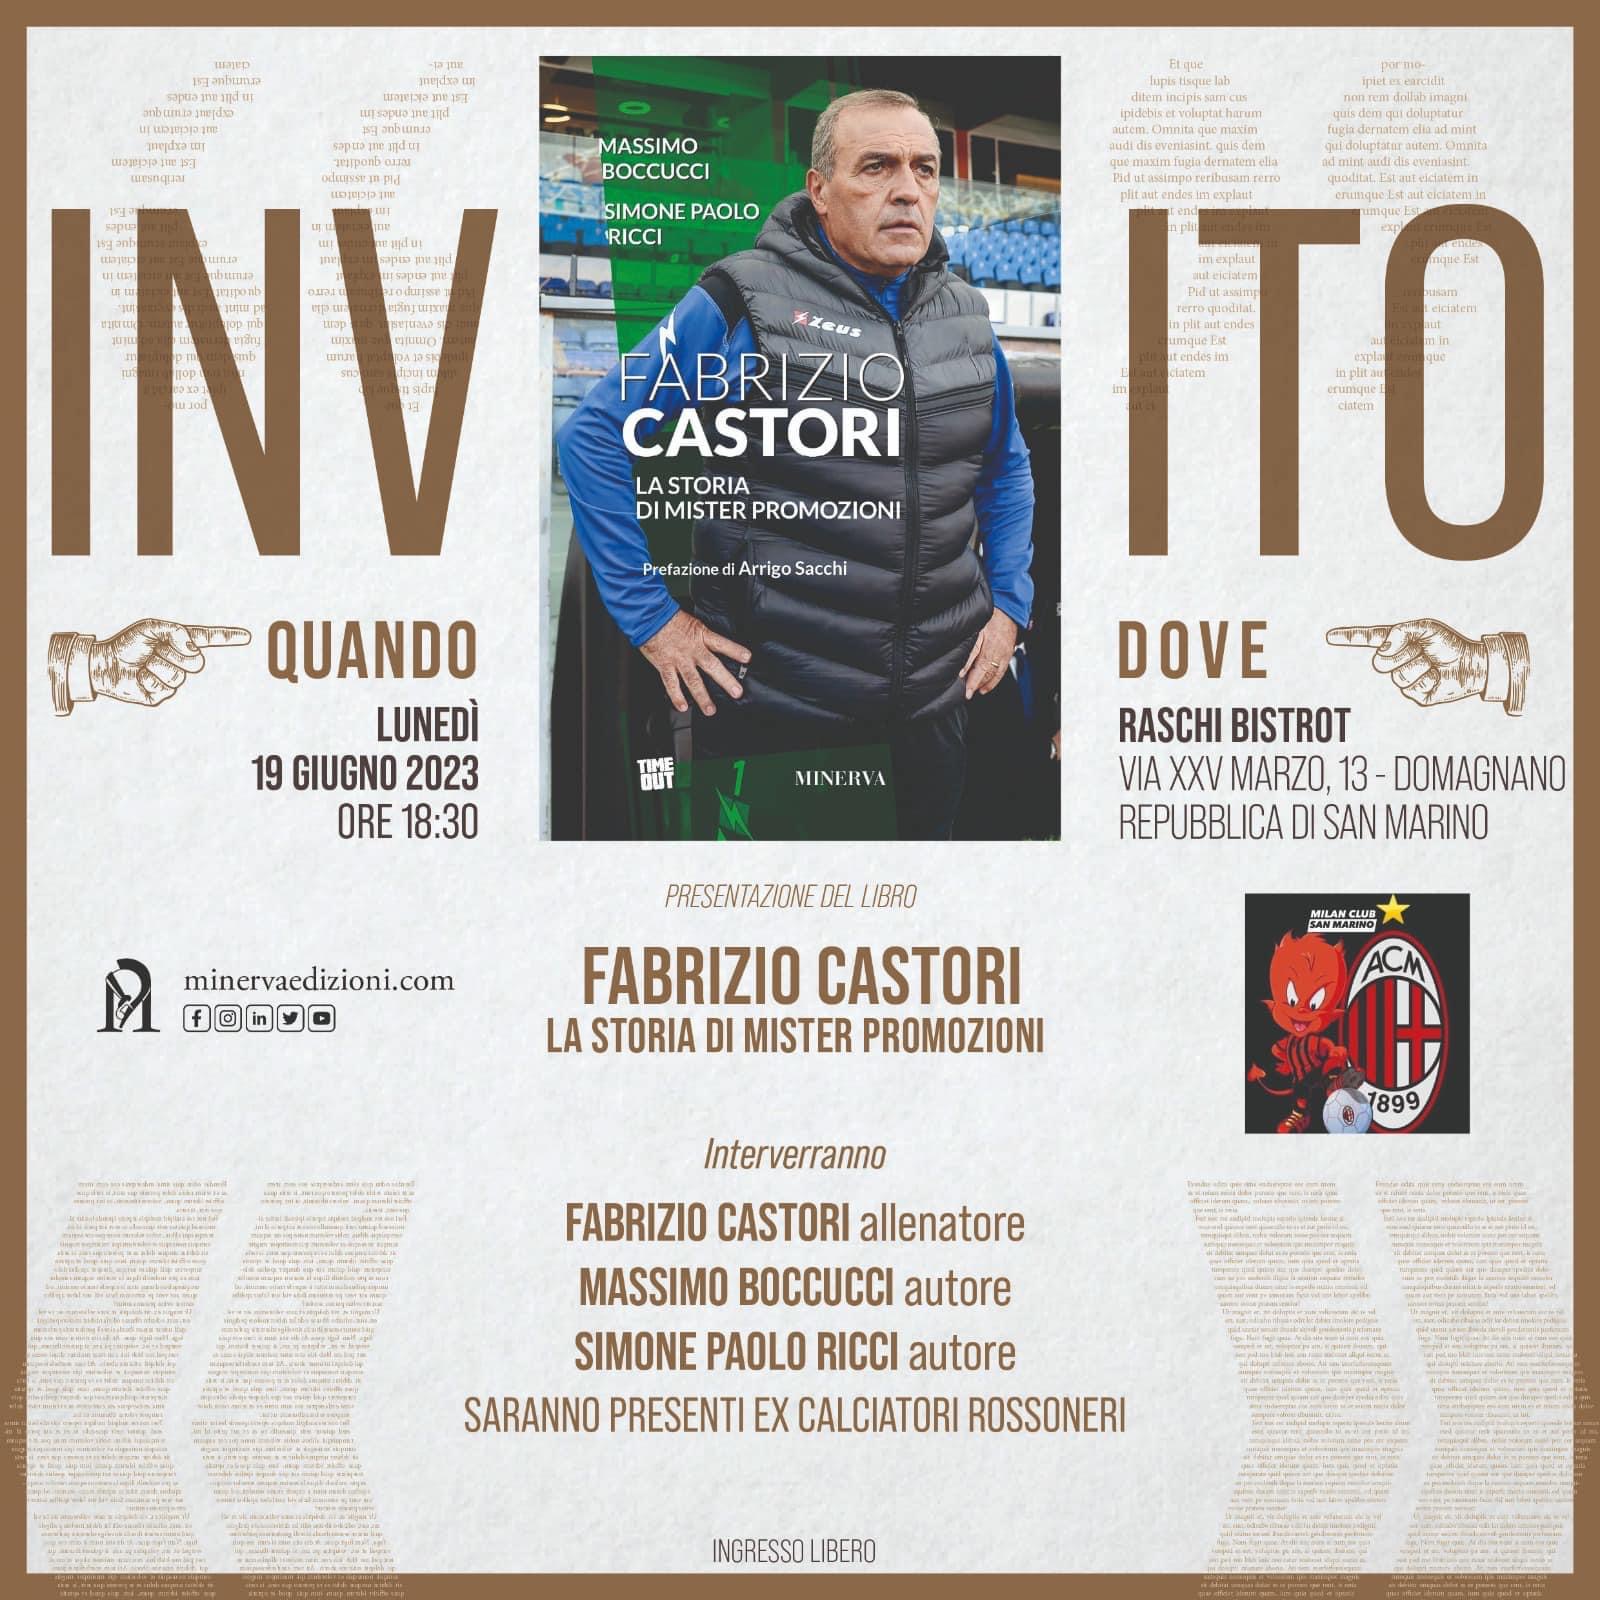 Il Milan Club di San Marino ospita Fabrizio Castori e Massimo Agostini